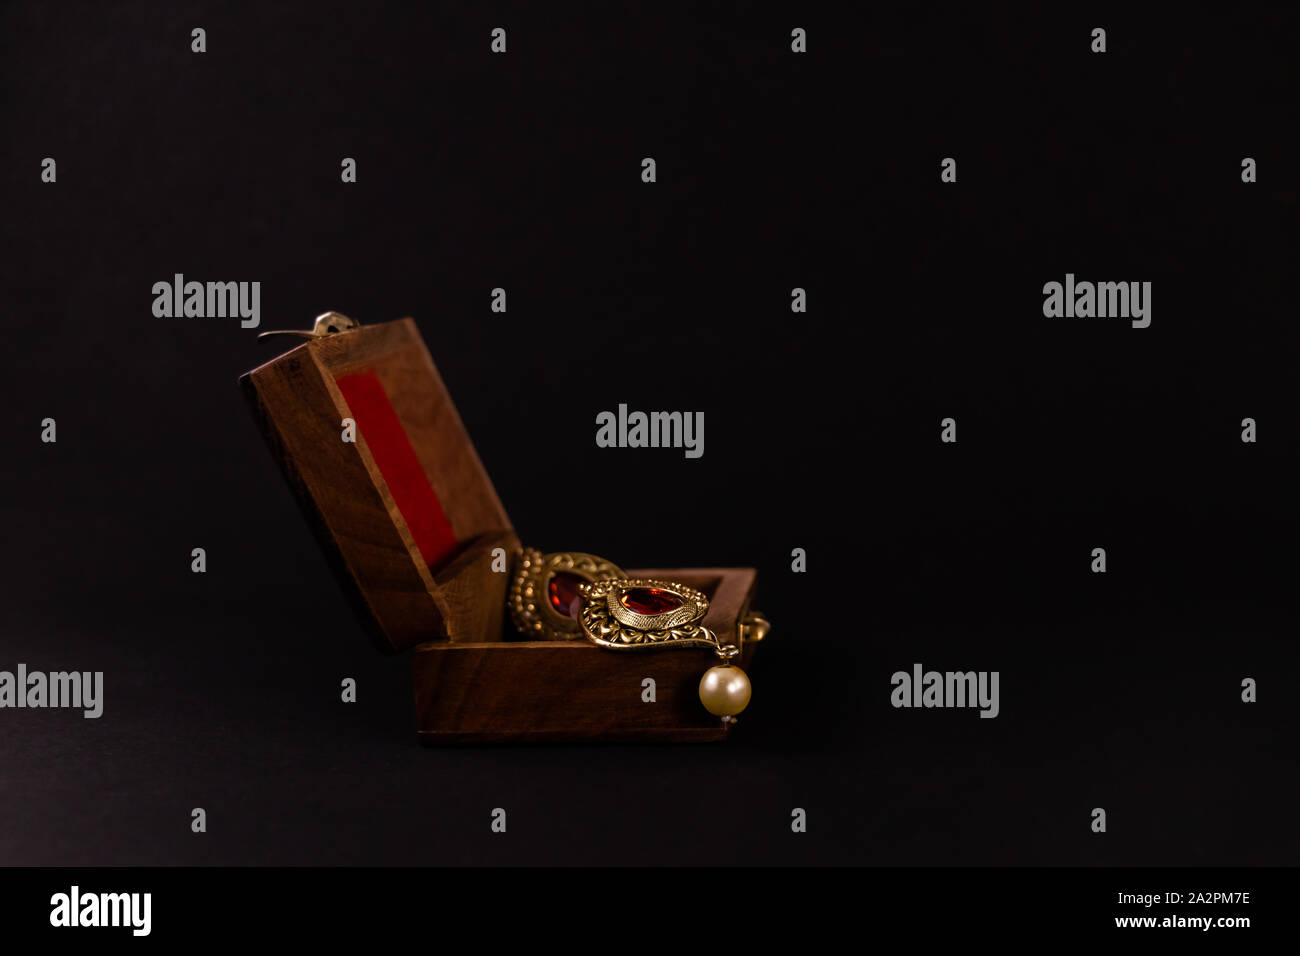 Golden Earing in Holz- Geschenkbox auf schwarzen Hintergrund. Schmuck Geschenk Konzept Stockfoto